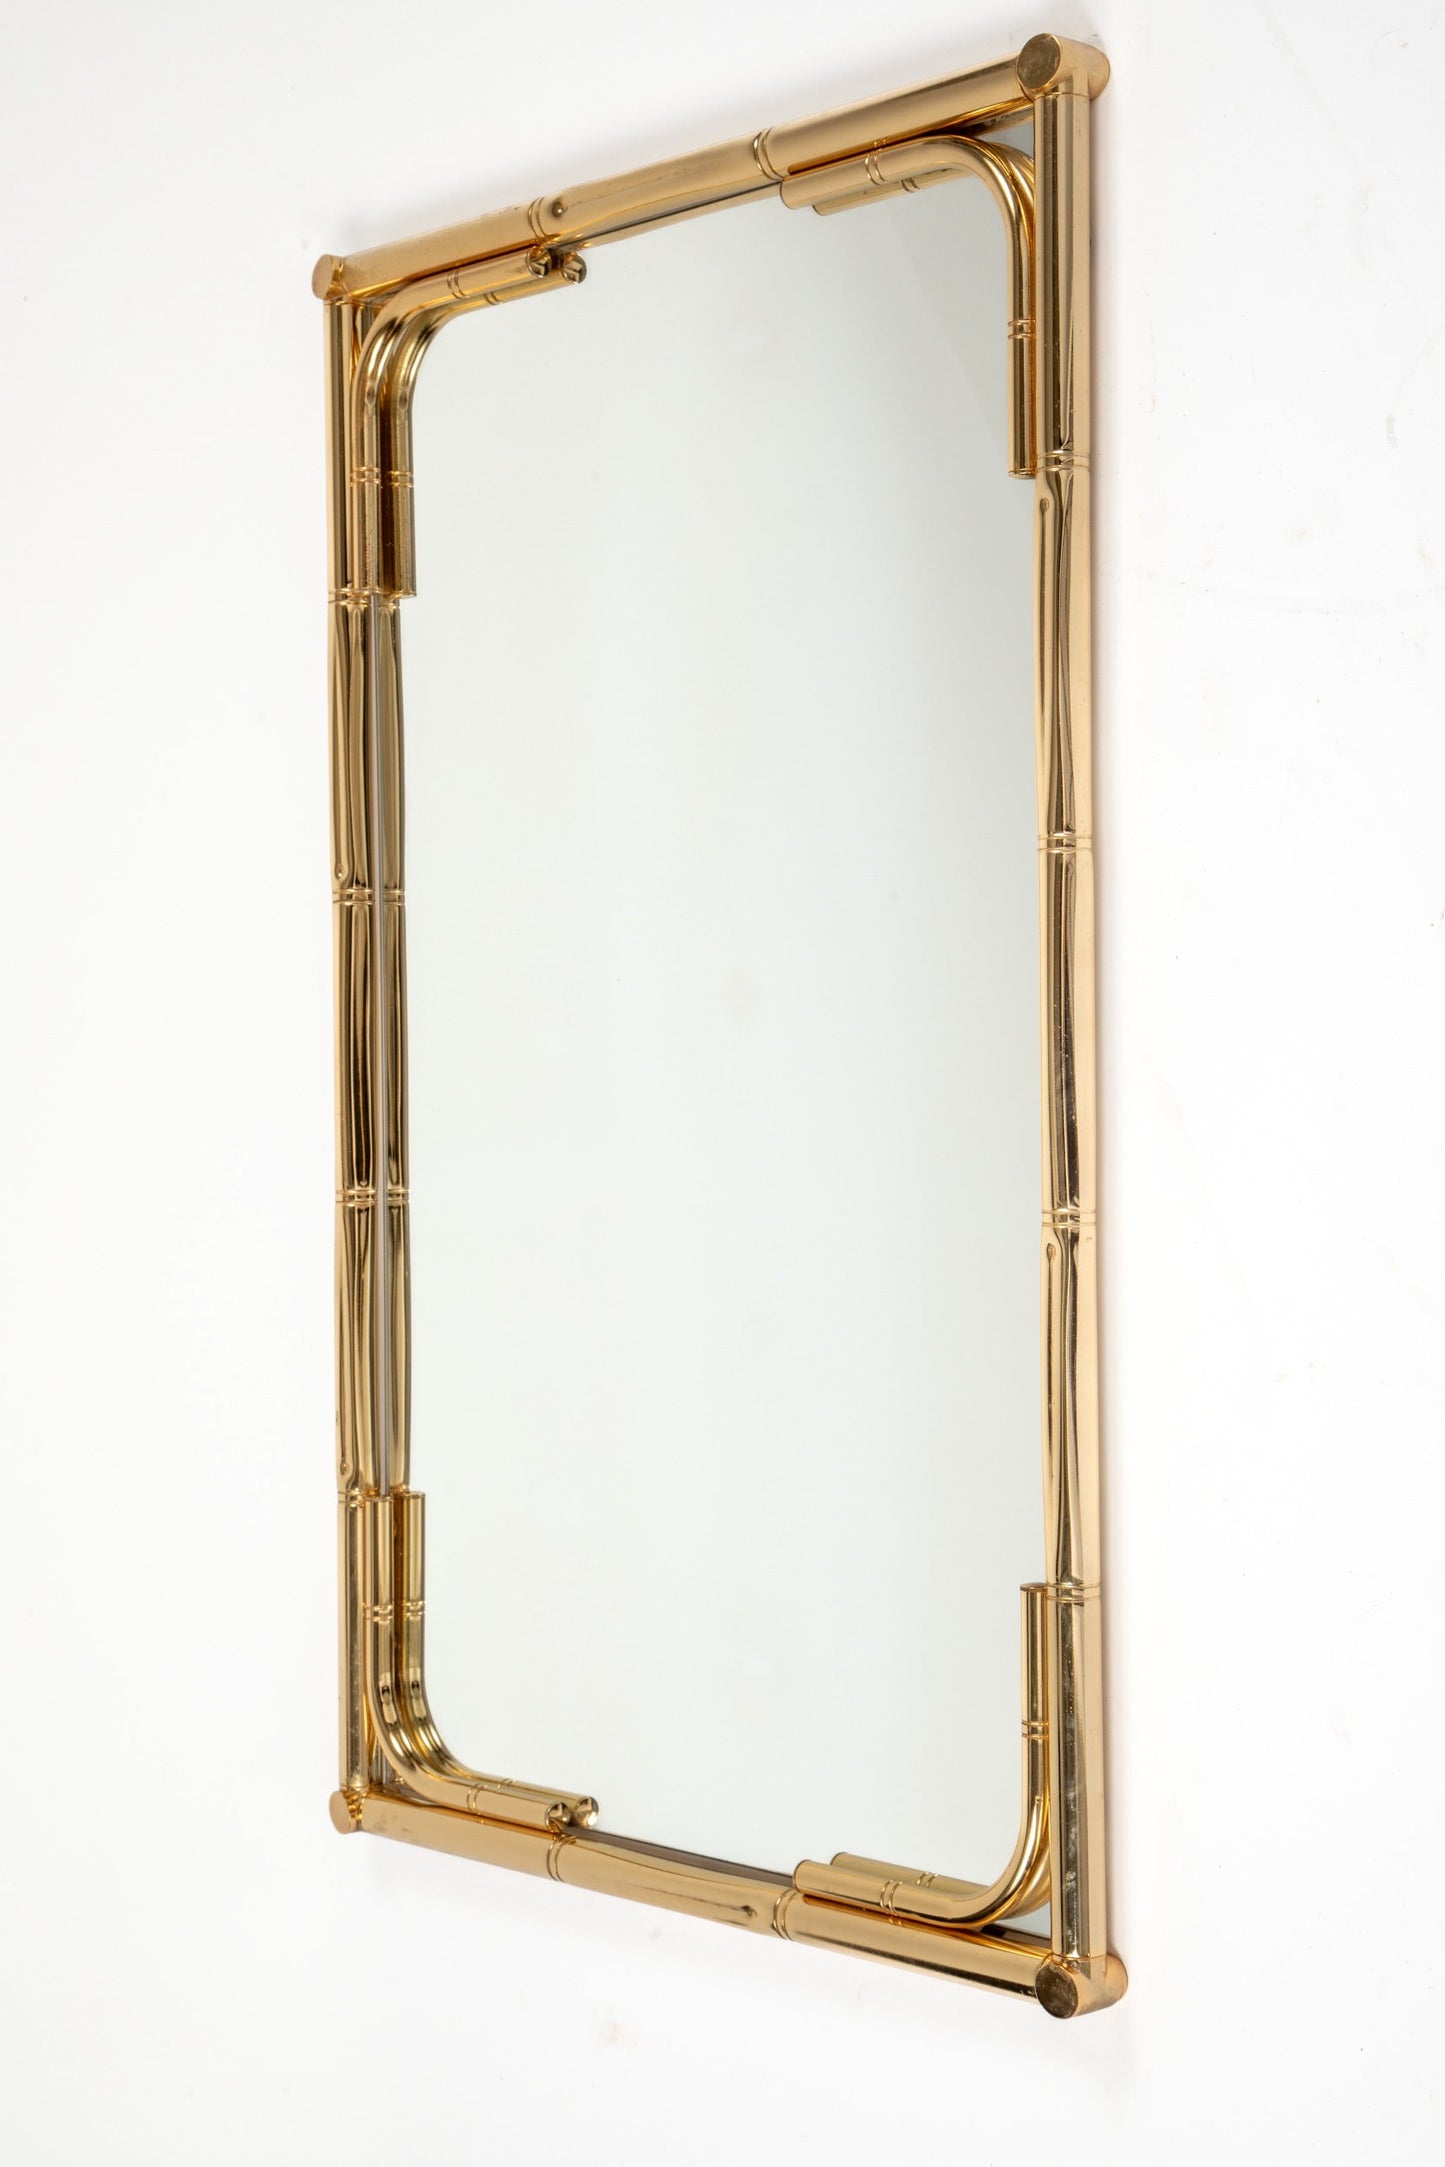 Specchiera ottone bamboo anni 70